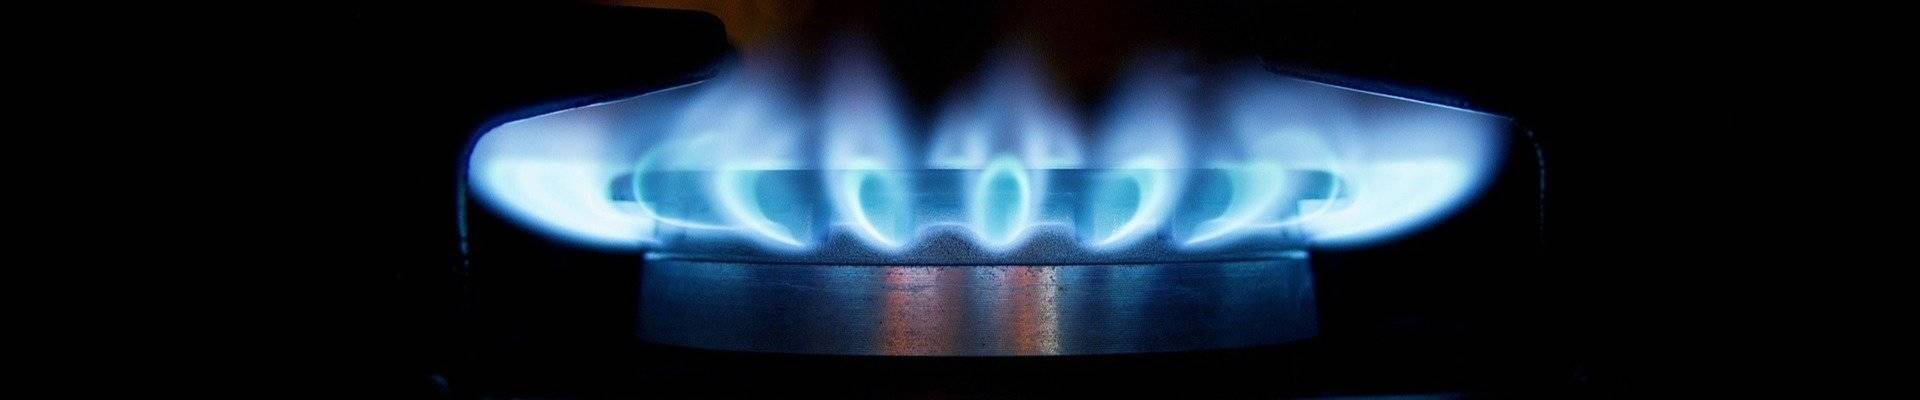 Трейдеры предсказывают существенное снижение стоимости российского газа